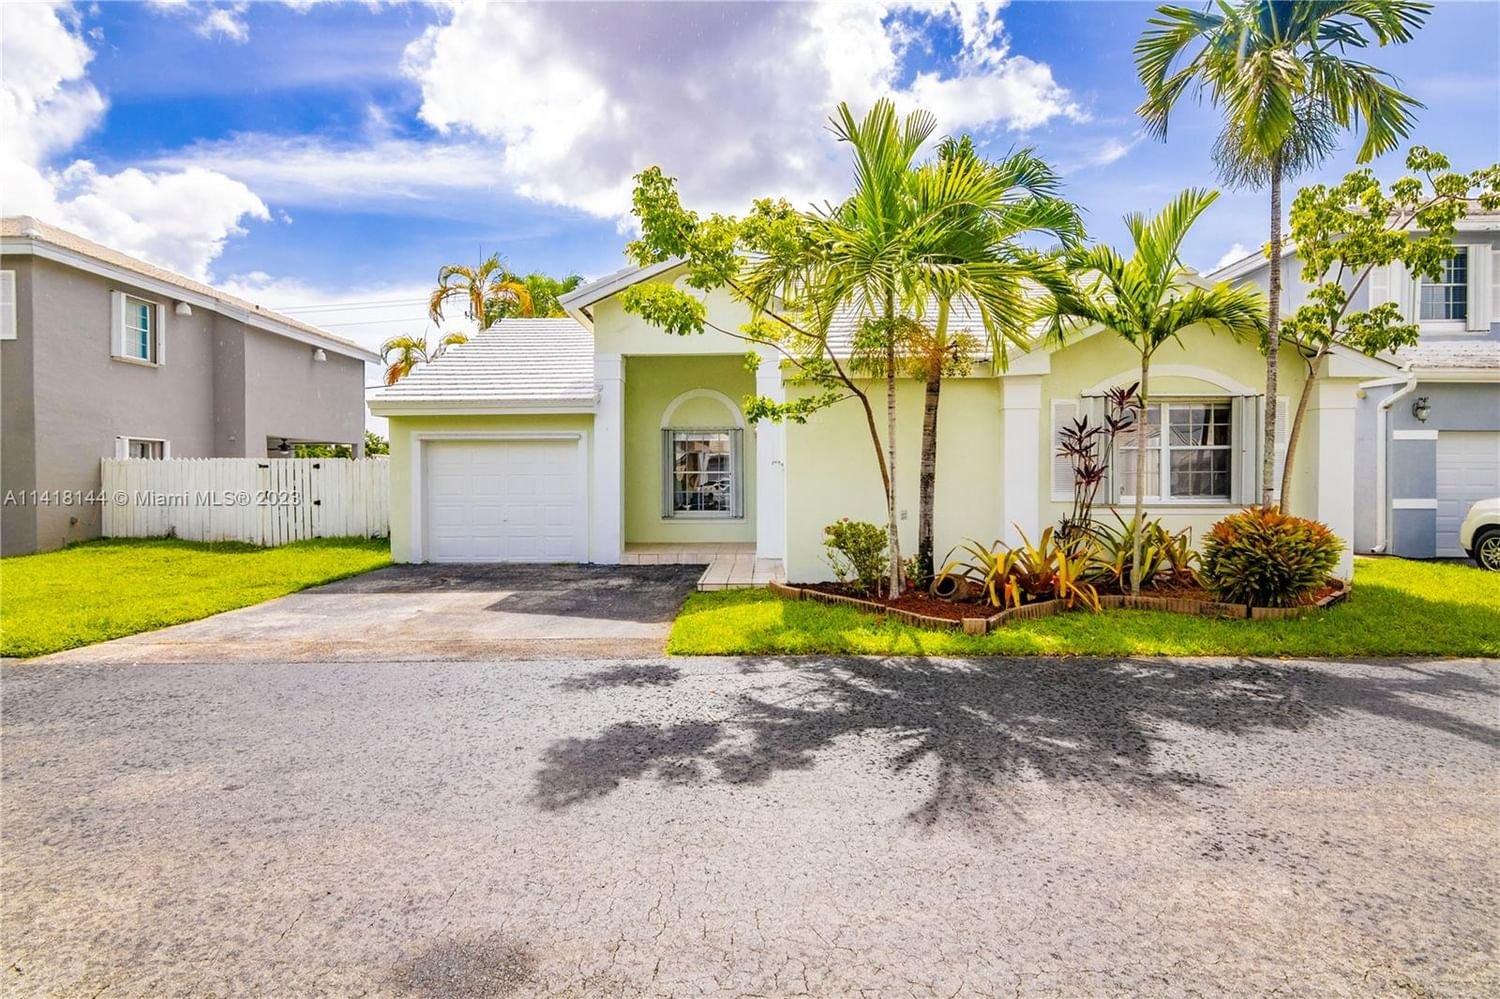 Real estate property located at 11211 64th Ln, Miami-Dade County, Miami, FL